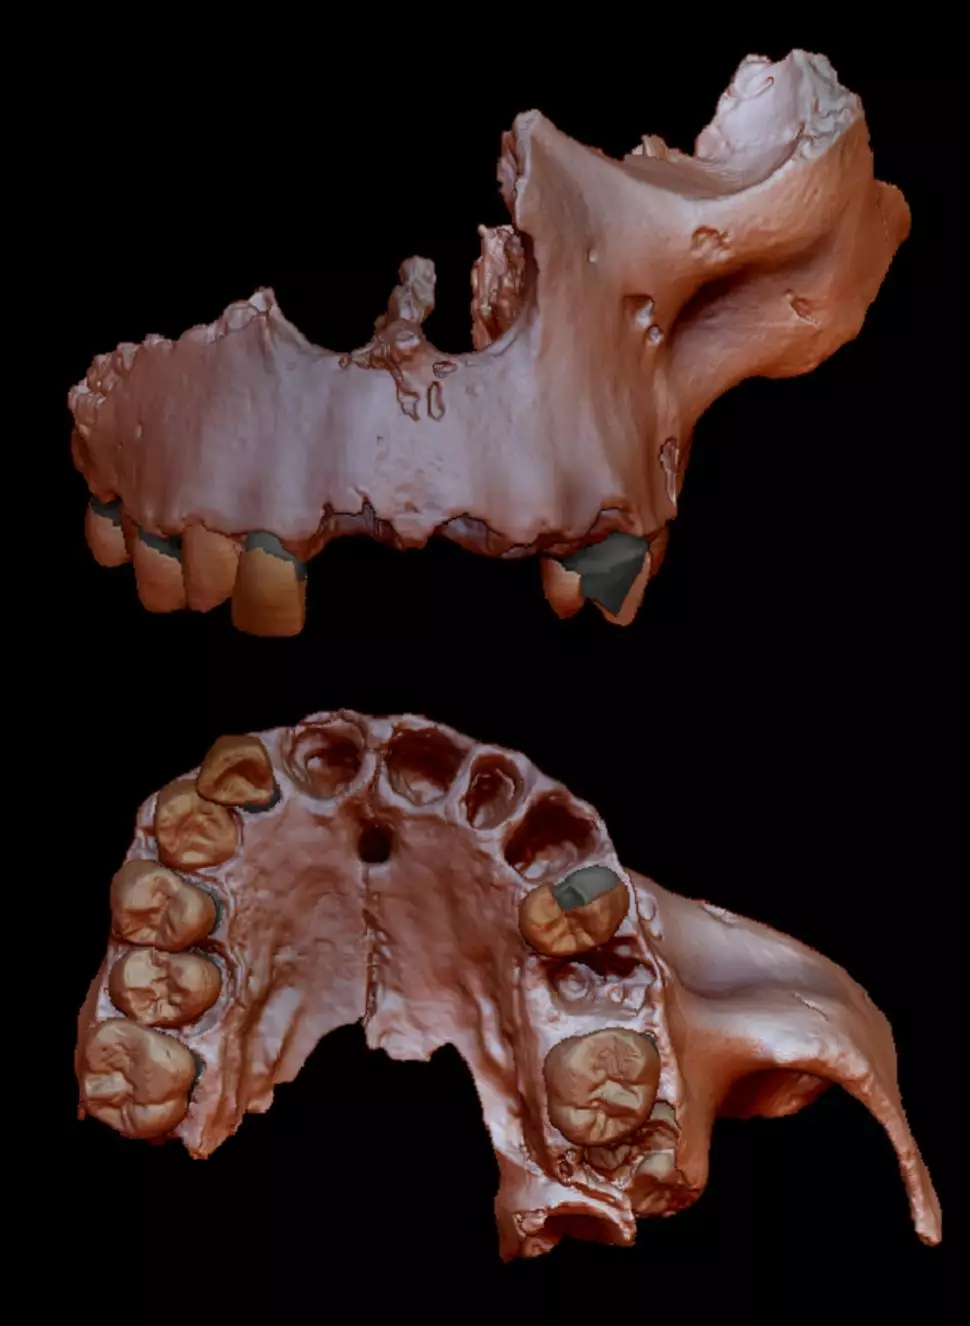 A digital recreation of the Homo antecessor fossil.